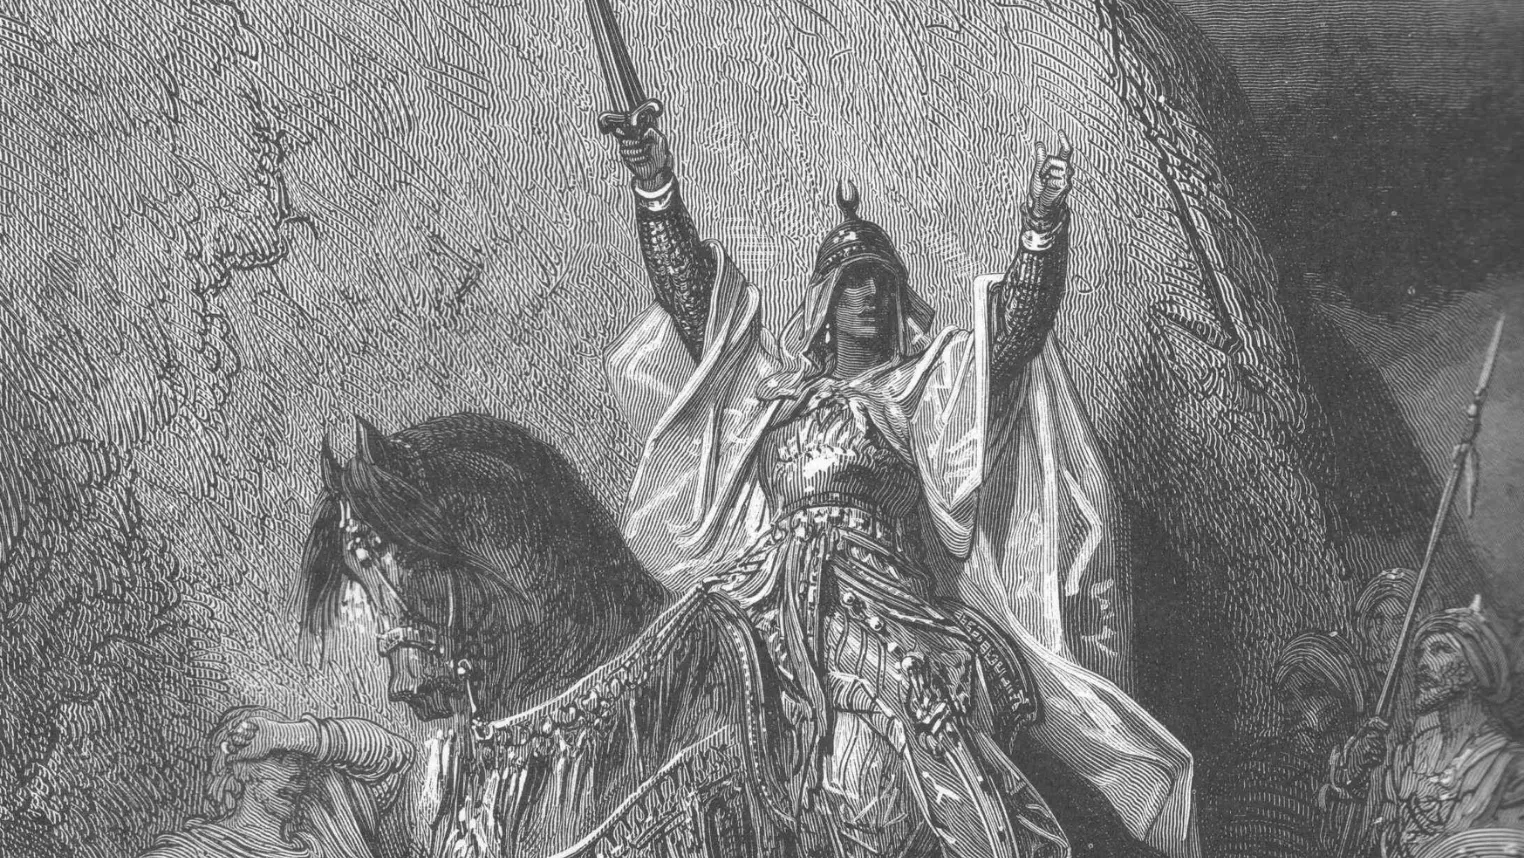 Saladí victoriós al camp de batalla, en un gravat colorit del segle XIX. El cabdill va saber planejar un únic i contundent cop per enderrocar l’exèrcit croat